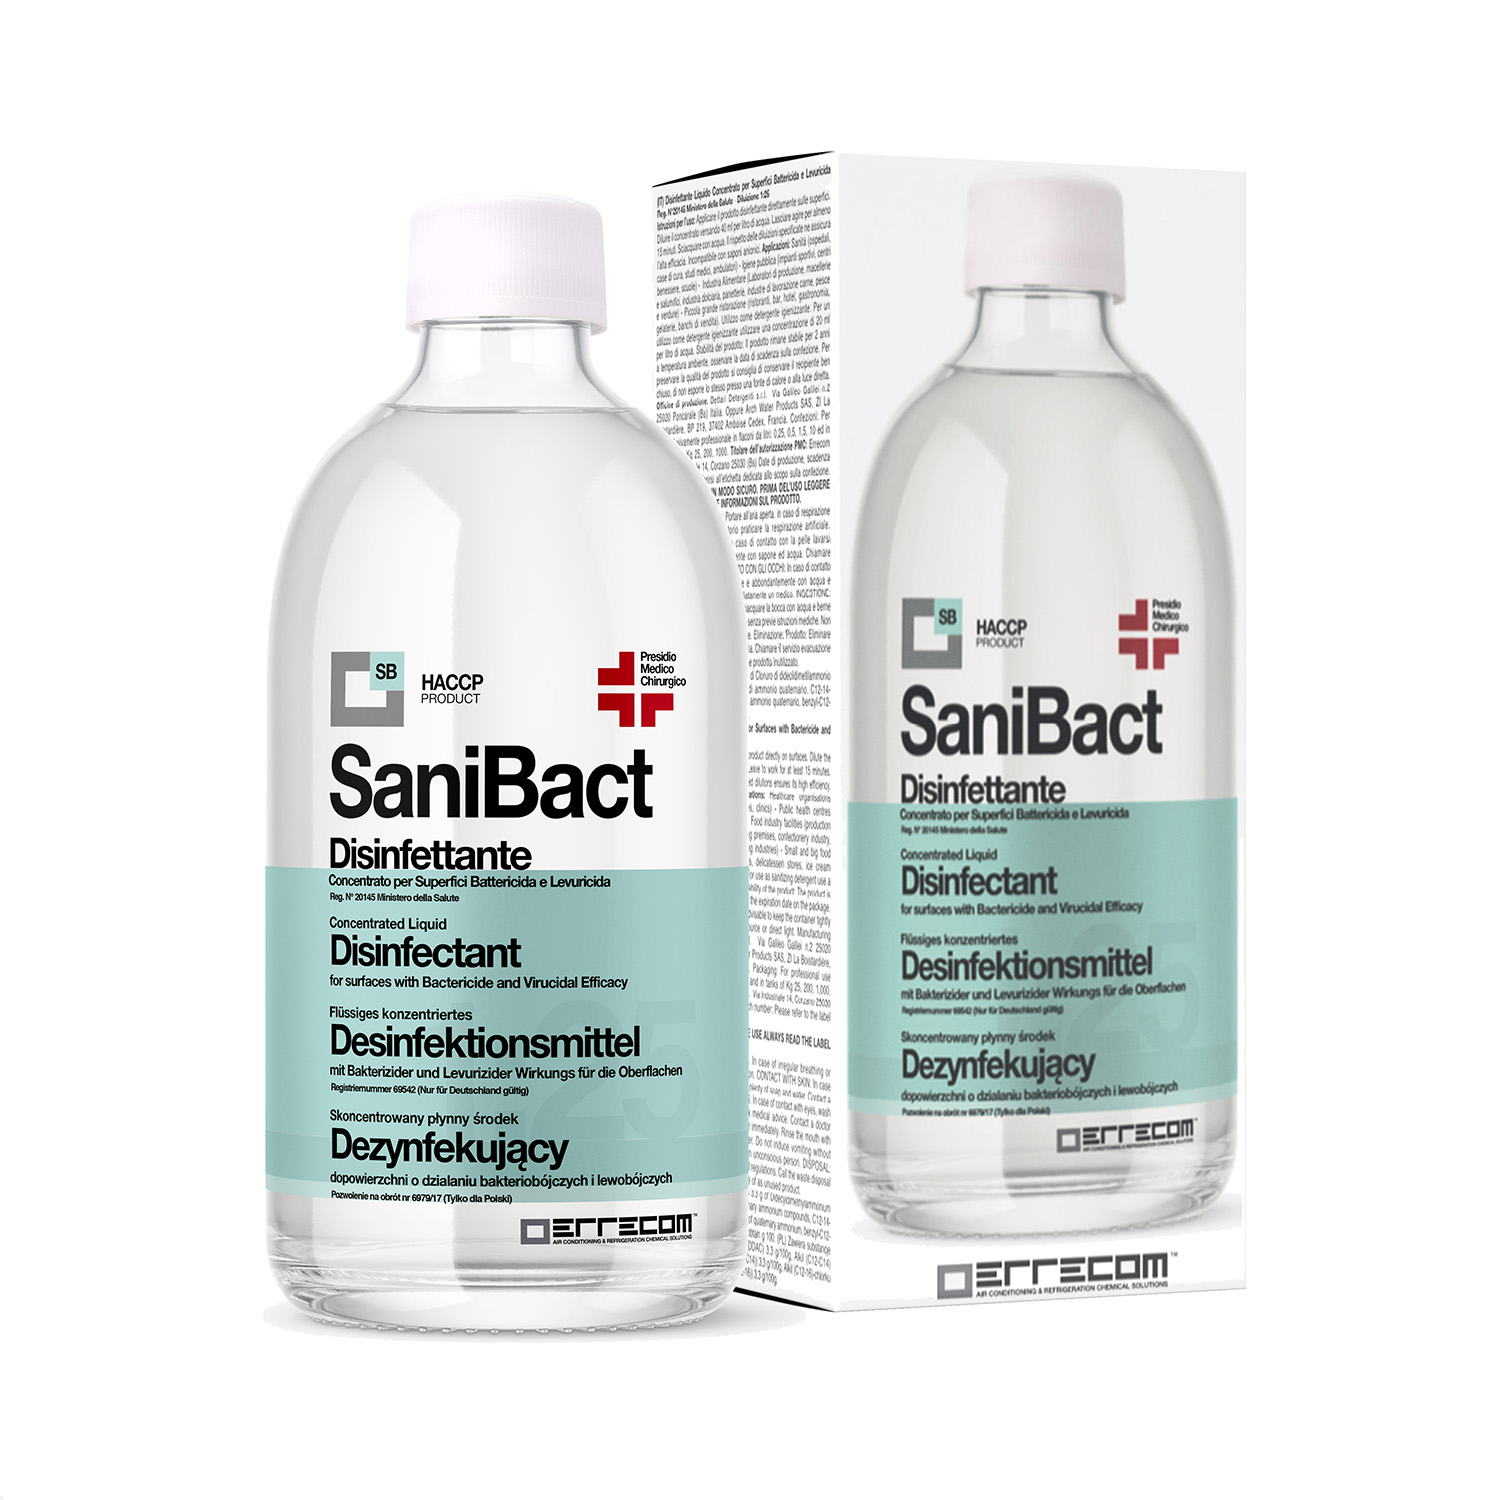 SANIBACT Disinfettante liquido per Superfici, Battericida, Levuricida e Virucida (Presidio Medico Chirurgico) - Flacone 500 ml.